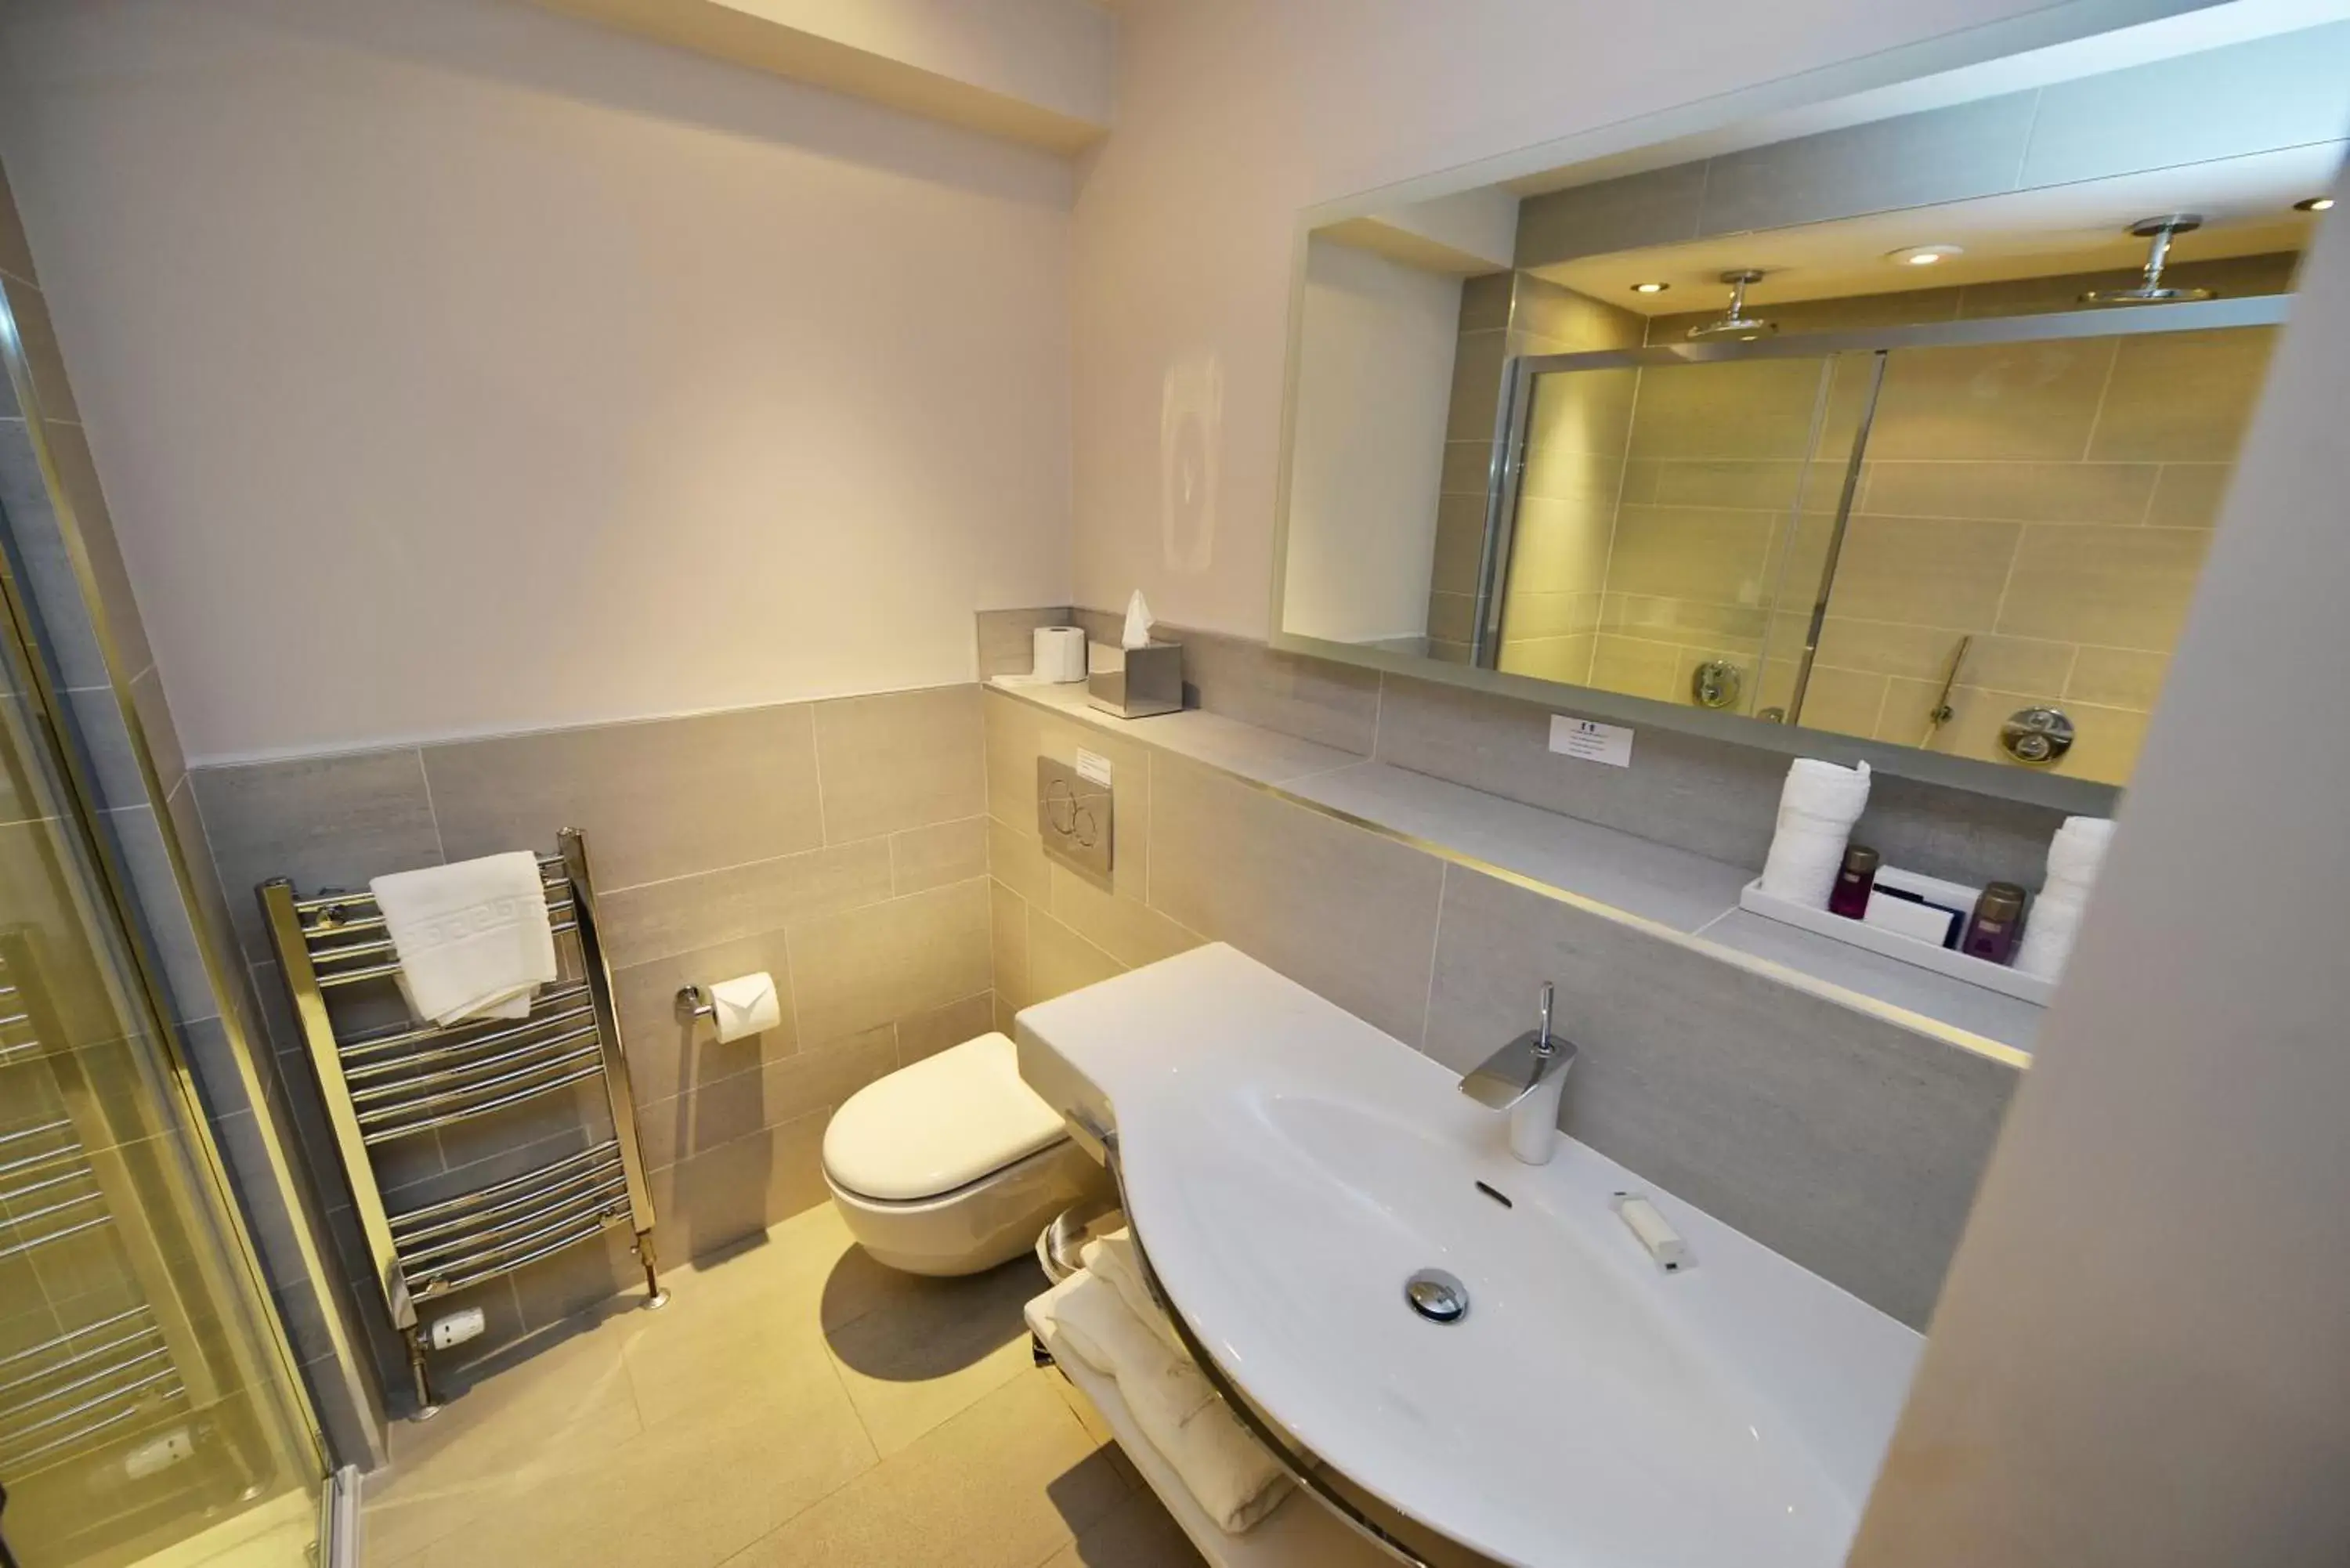 Toilet, Bathroom in Glynhill Hotel & Spa near Glasgow Airport